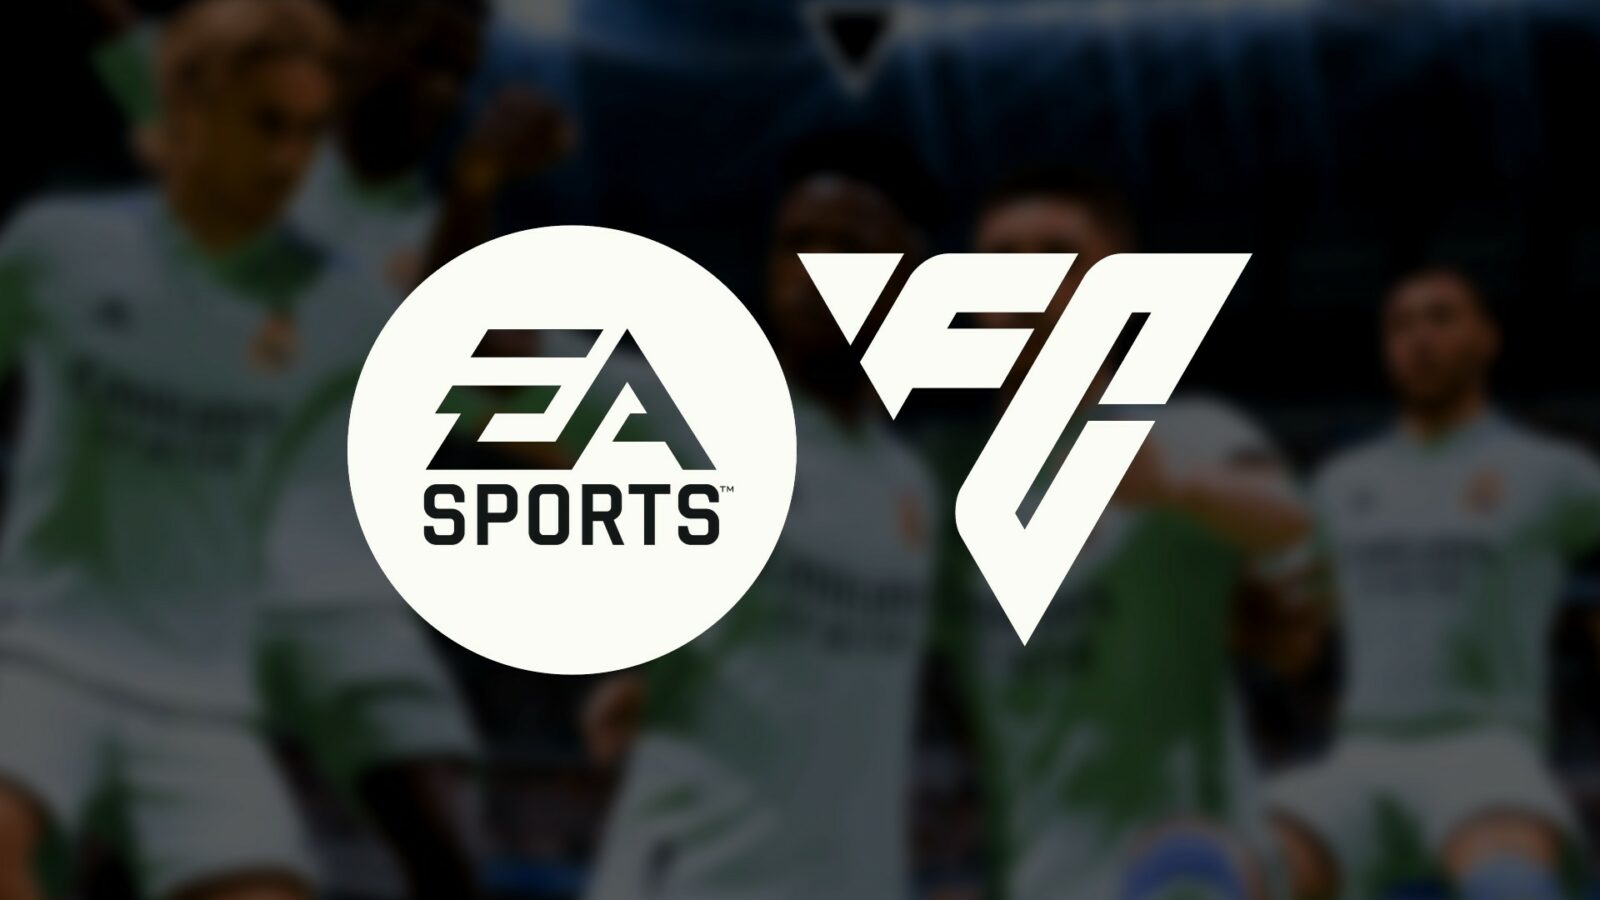 EA Sports FC は、新しいブランドとコンテンツの約束で FIFA を一掃します